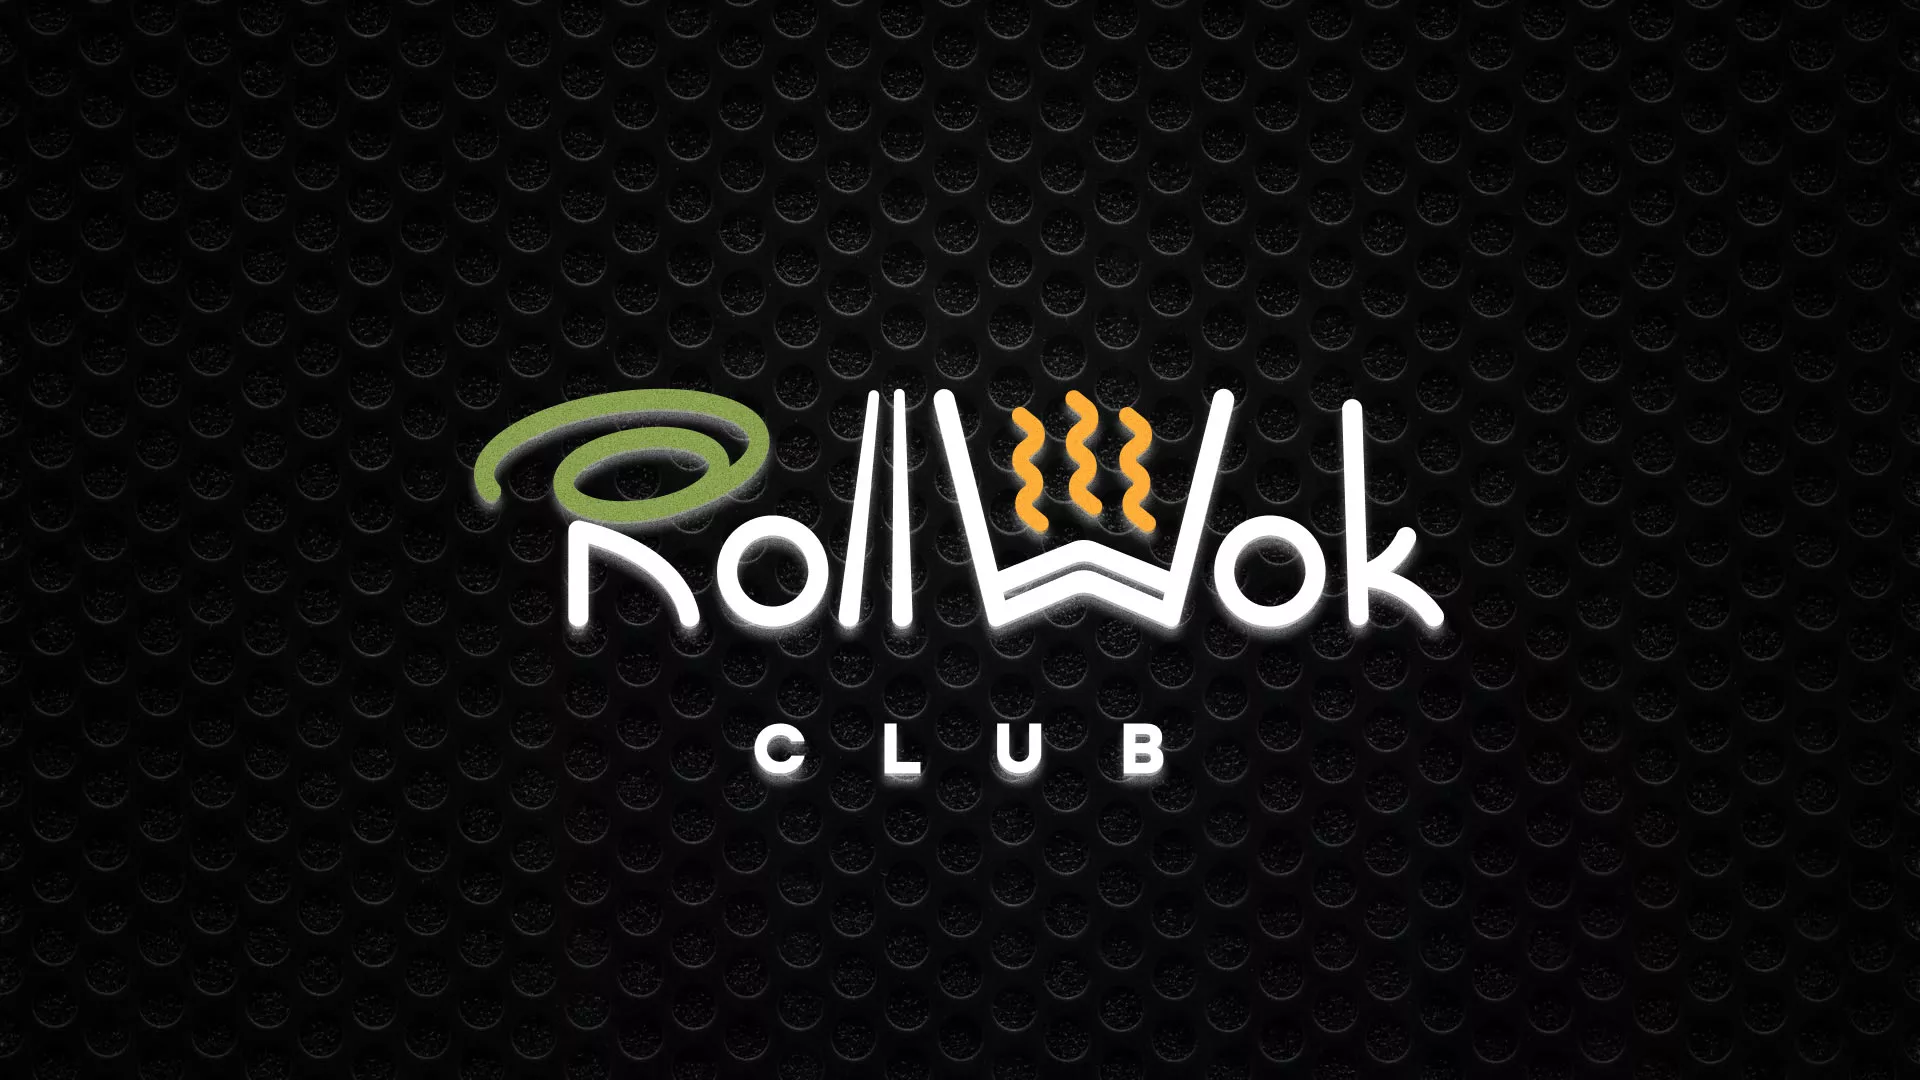 Брендирование торговых точек суши-бара «Roll Wok Club» в Углегорске